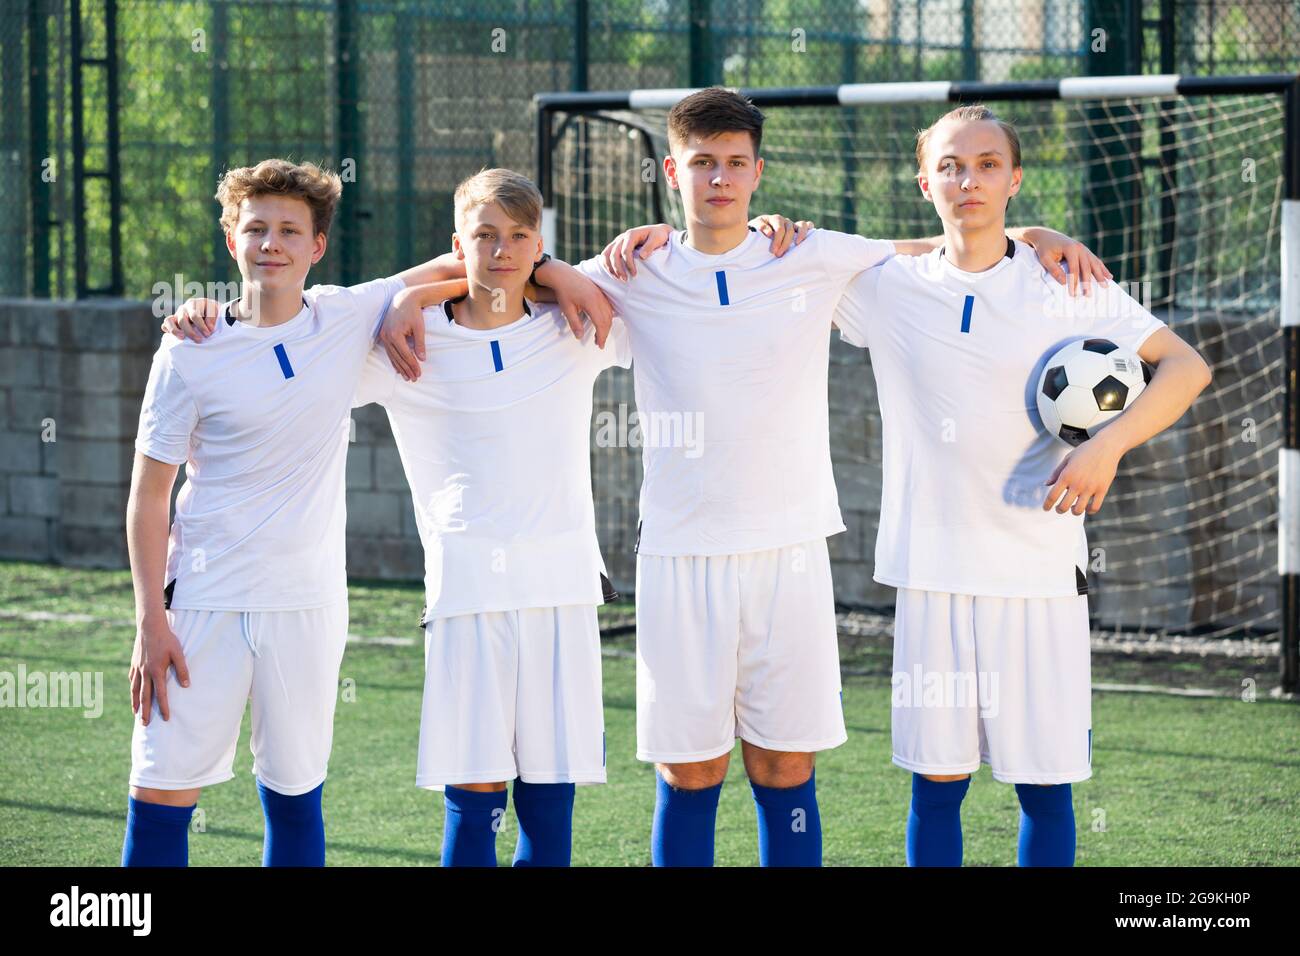 Porträt der männlichen High School Fußballmannschaft auf dem Feld Stockfoto